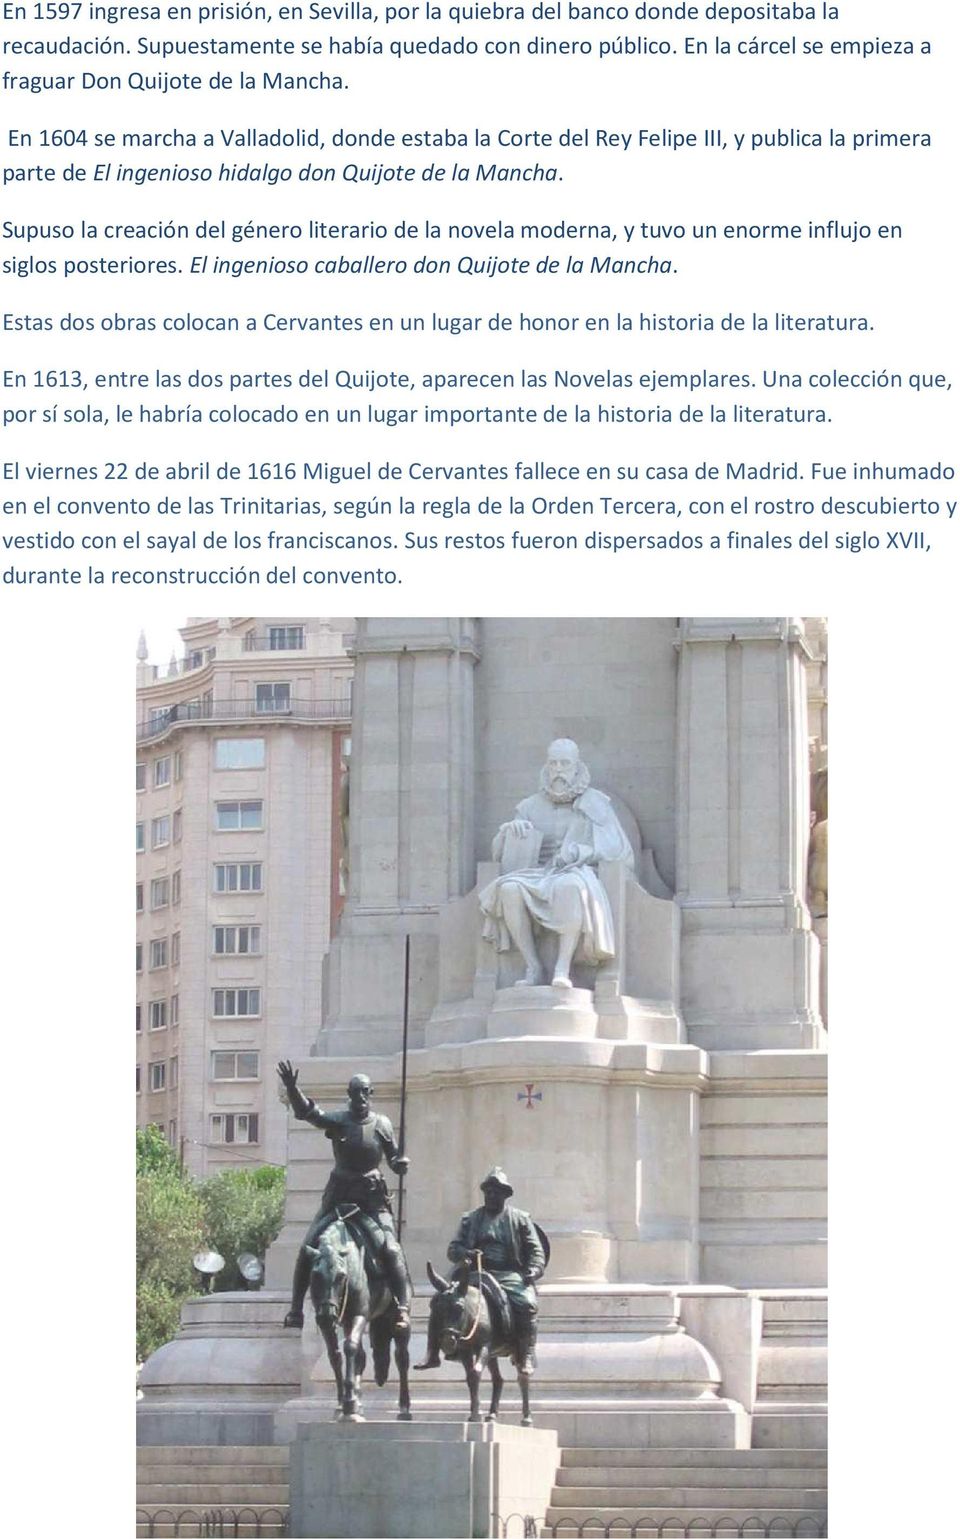 En 1604 se marcha a Valladolid, donde estaba la Corte del Rey Felipe III, y publica la primera parte de El ingenioso hidalgo don Quijote de la Mancha.